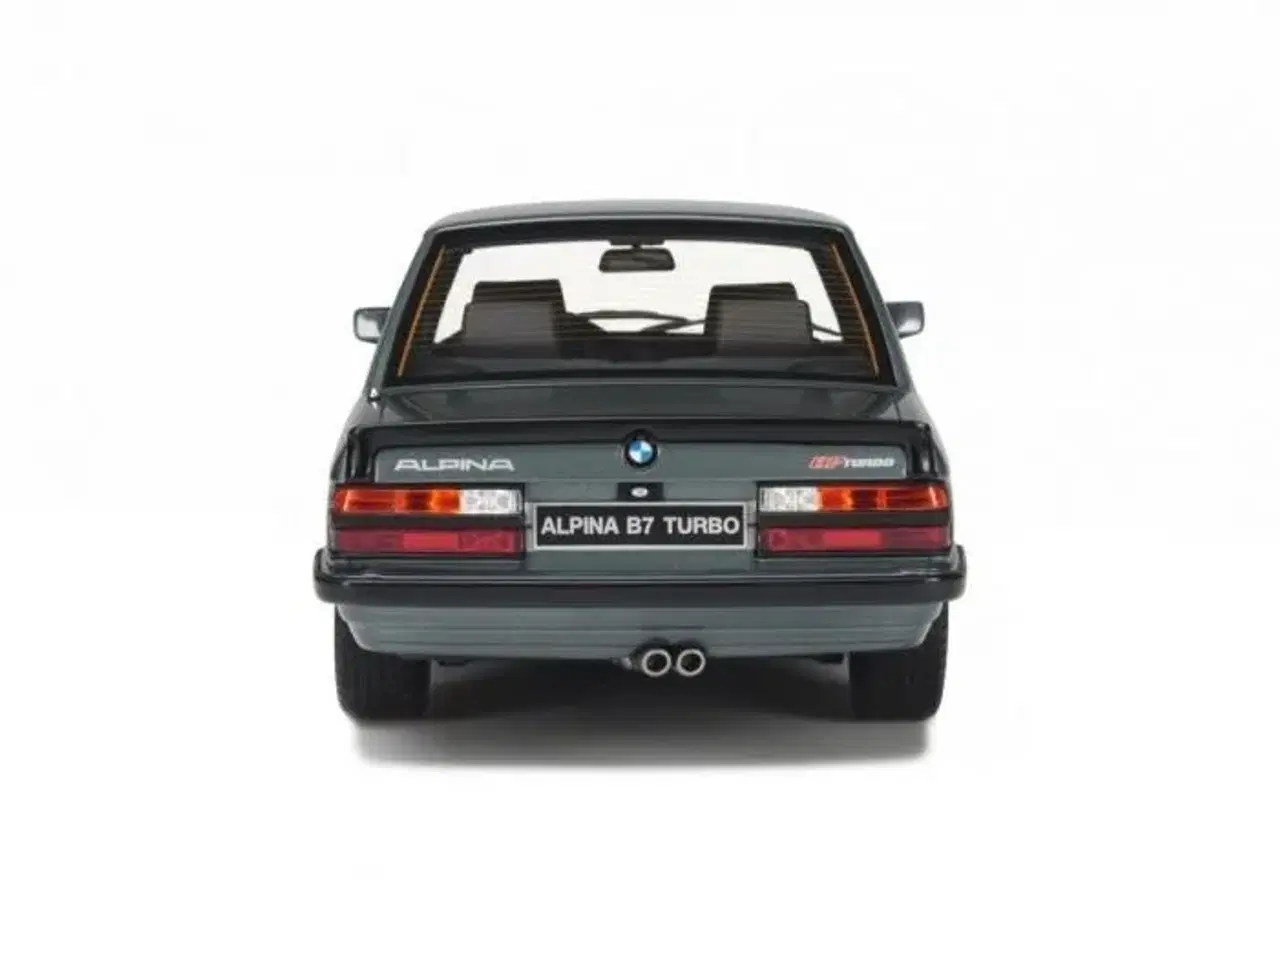 Billede 7 - 1983 BMW M5 E28 Shadow Line Alpina B7 Turbo